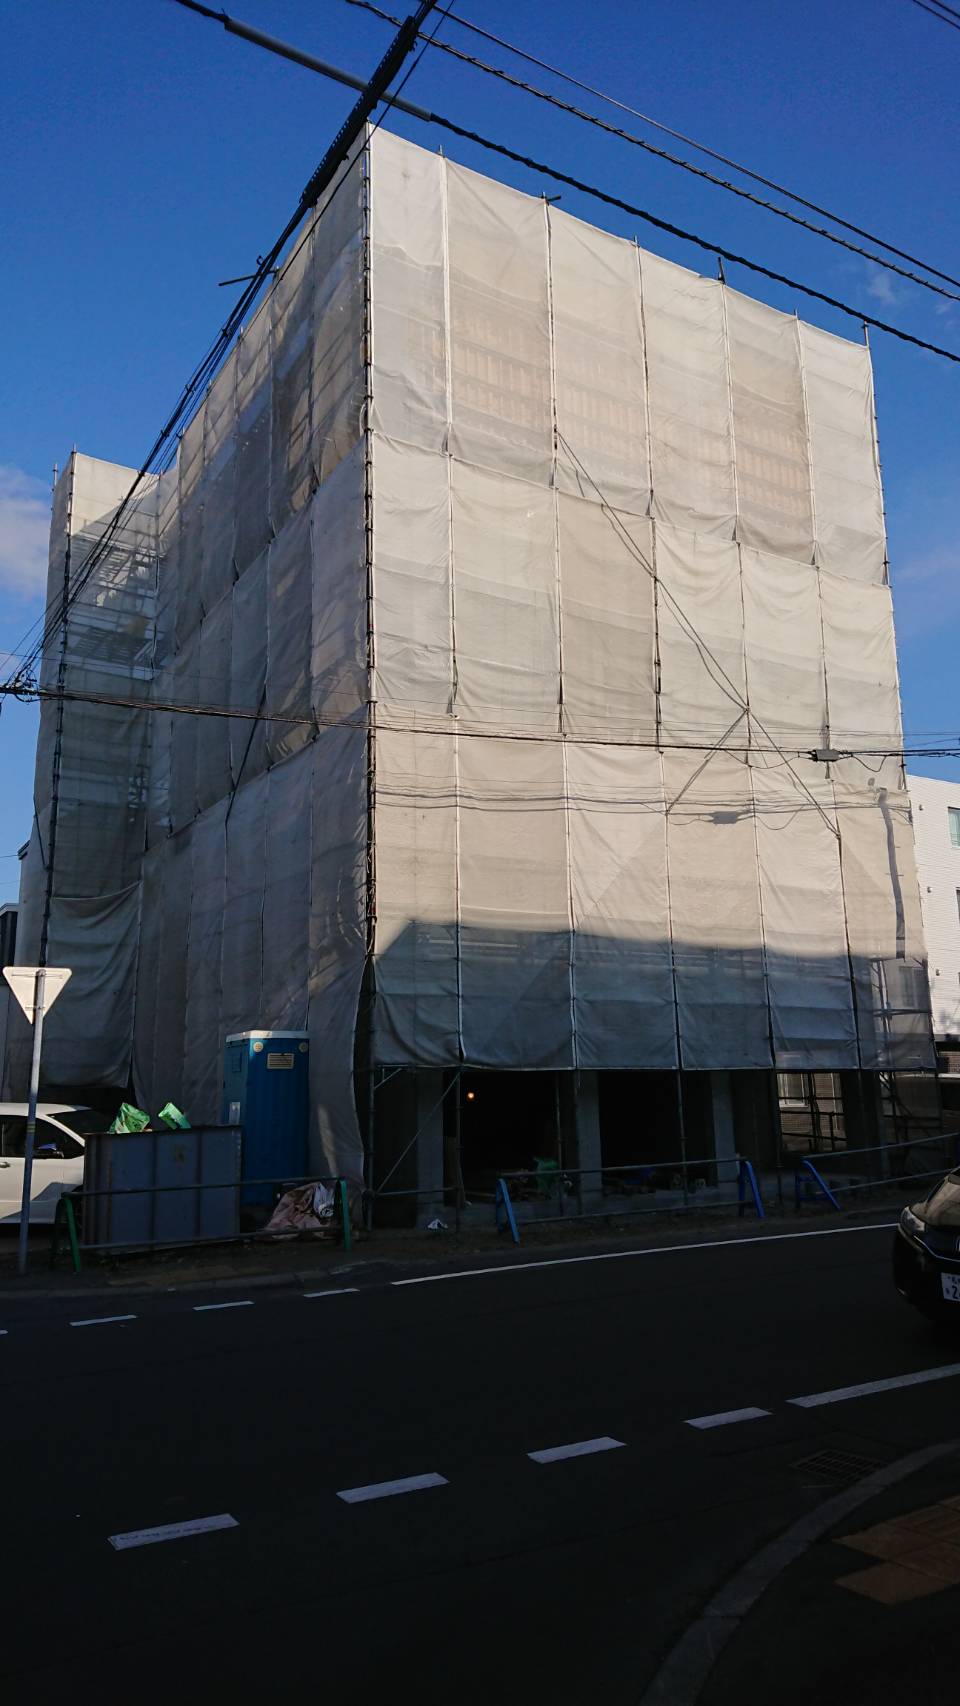 札幌市西区二十四軒三条のマンションの建物外観